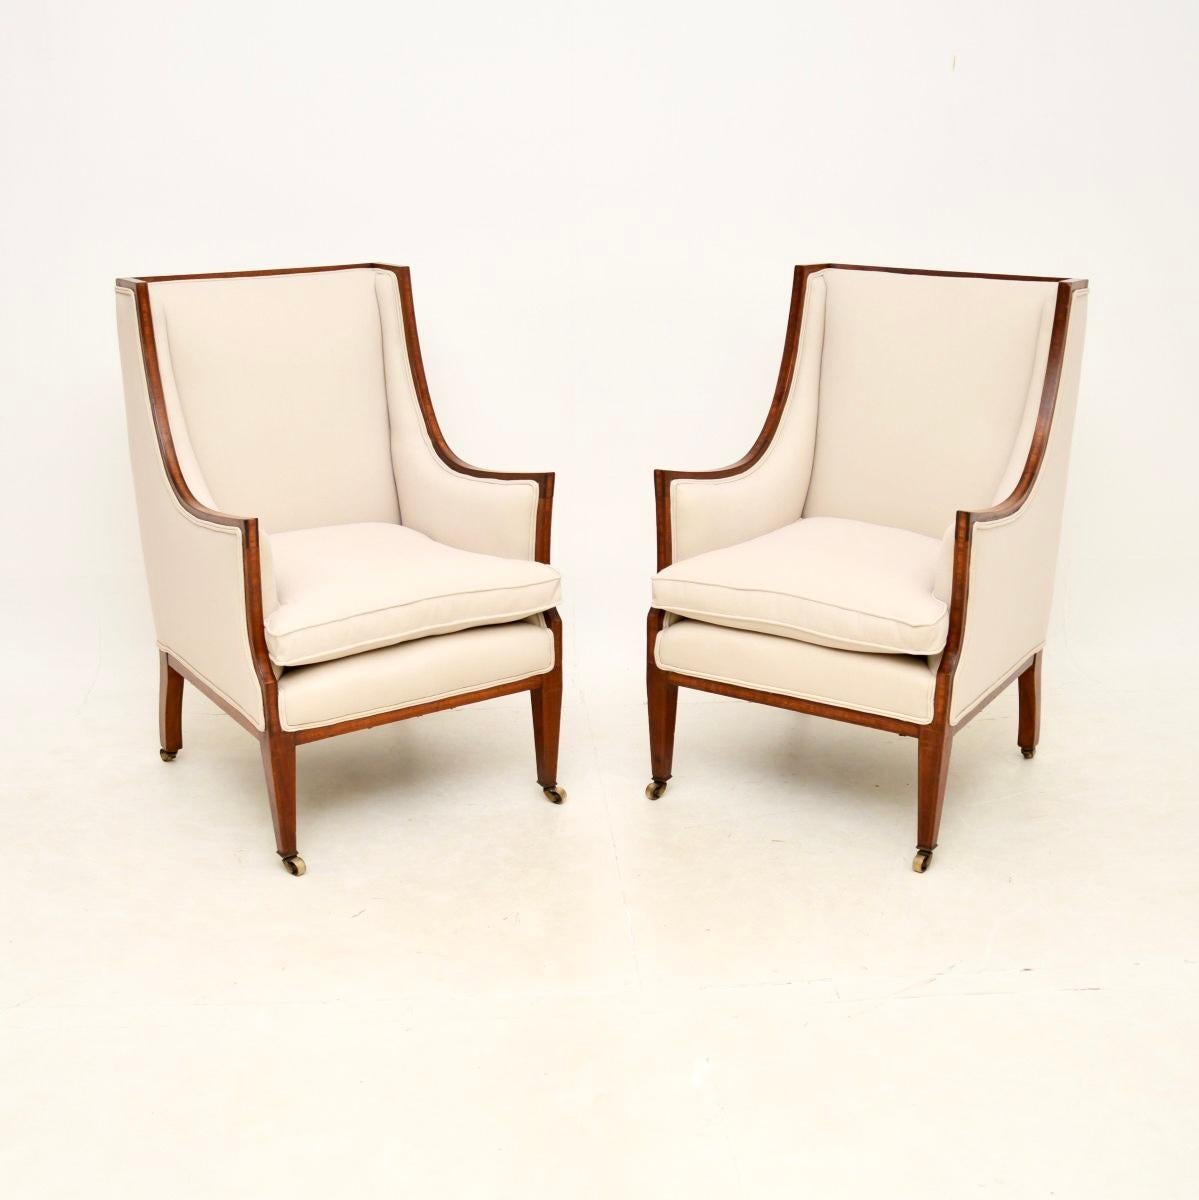 Une fantastique paire de fauteuils anciens de l'époque édouardienne. Fabriqués en Angleterre, ils datent de la période 1900-1910.

Ils sont d'une qualité extrêmement fine, avec un design magnifiquement élégant et galbé. Les cadres sont ornés d'une